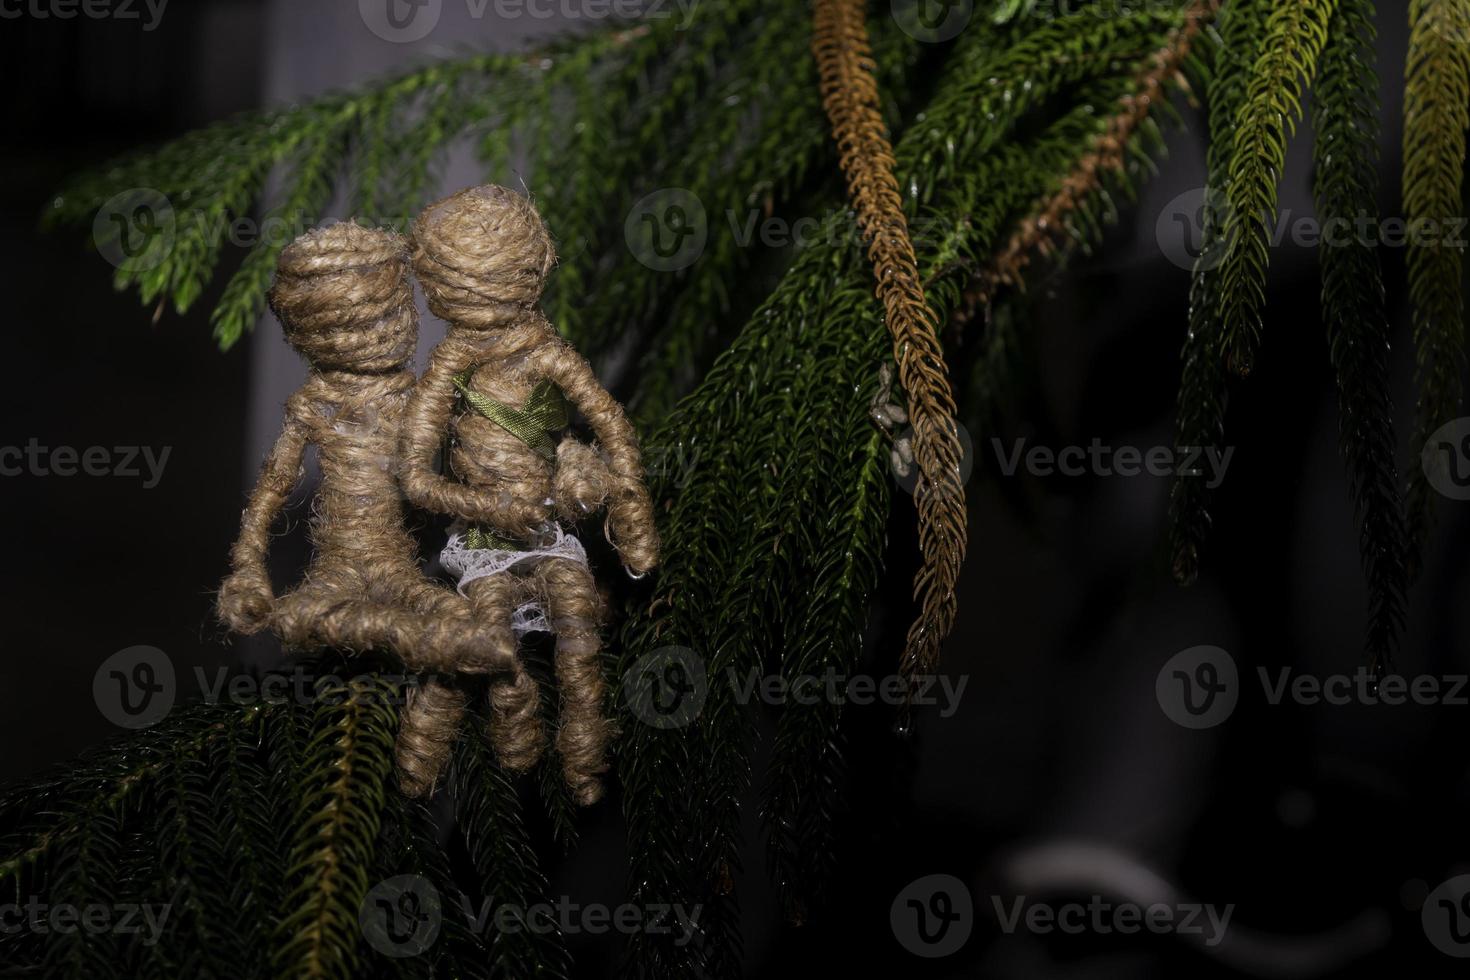 dockor från de tågvirke var tillsammans på de gran träd. romantisk fotografi begrepp. foto